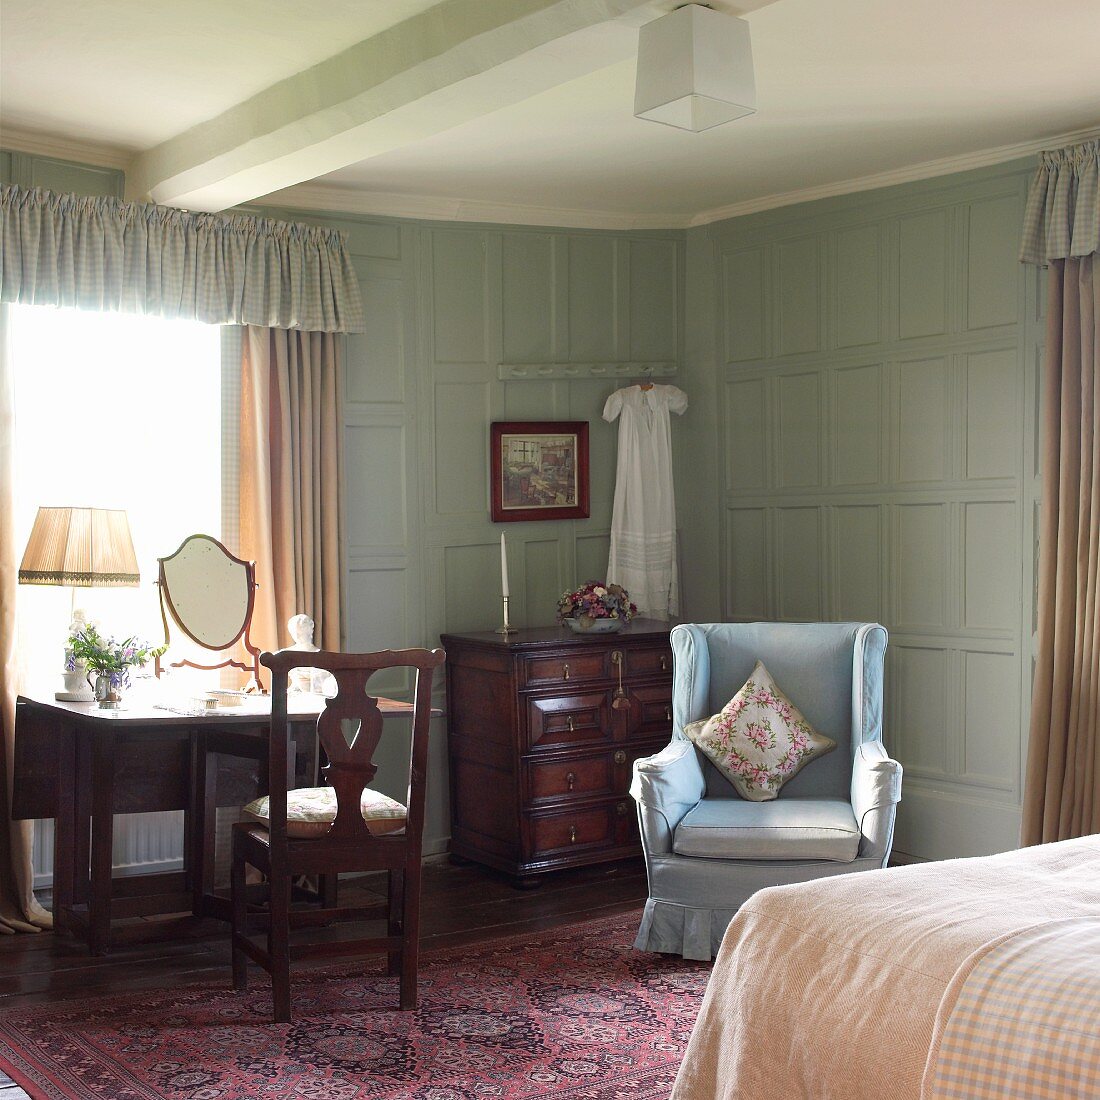 Altmodisches Schlafzimmer mit Ohrensessel und pastellblauer Wandvertäfelung